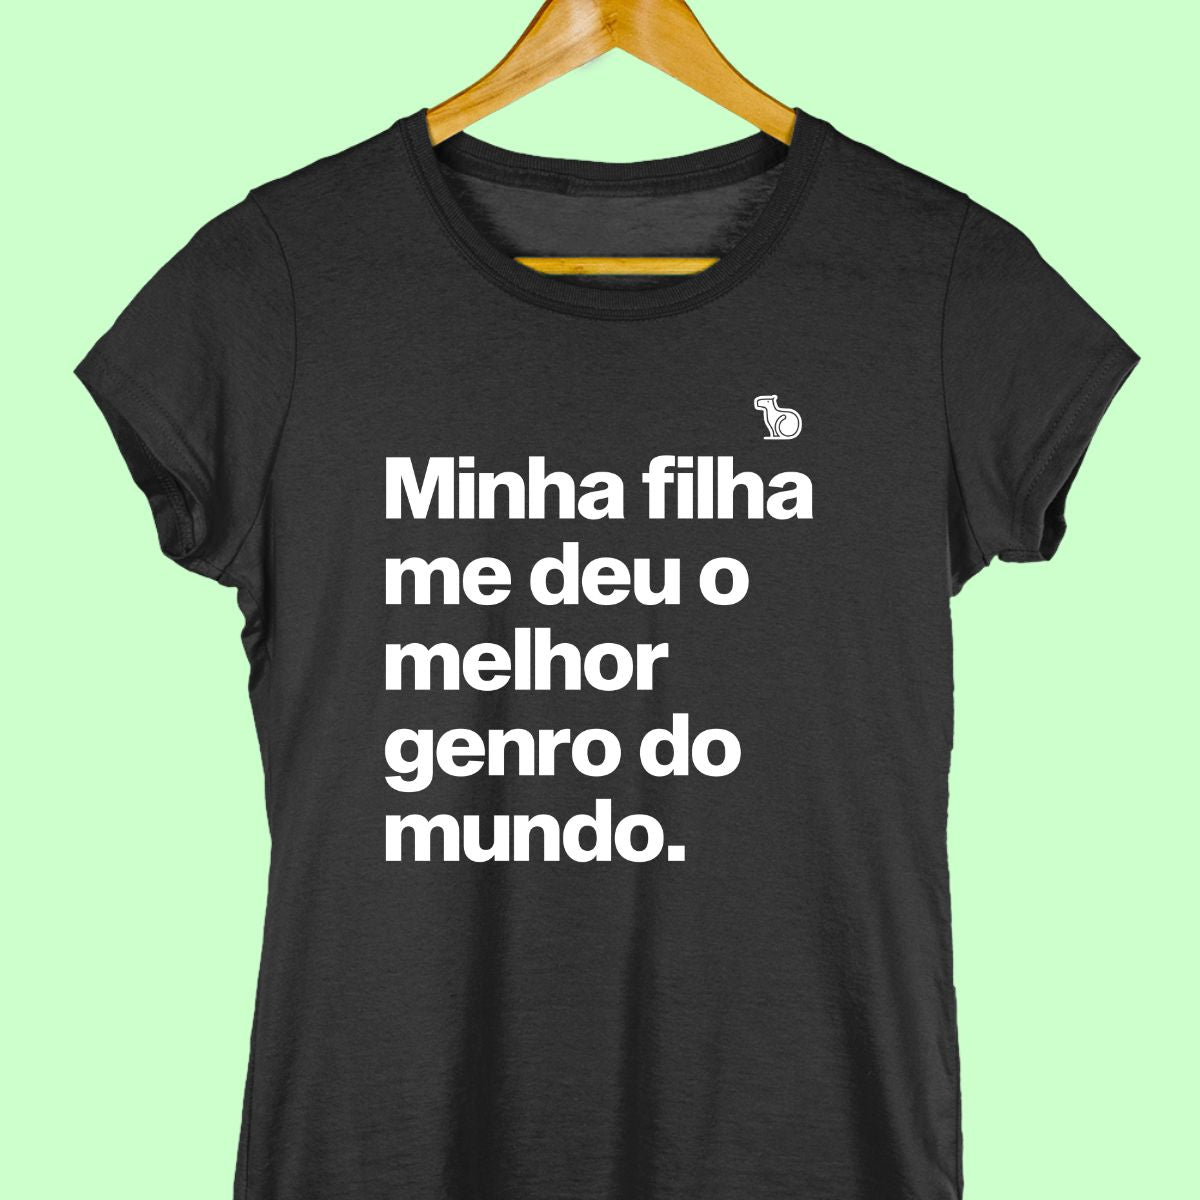 Imagem  da Camiseta Feminina na cor preta com a frase "Minha filha me deu o melhor genro do mundo".